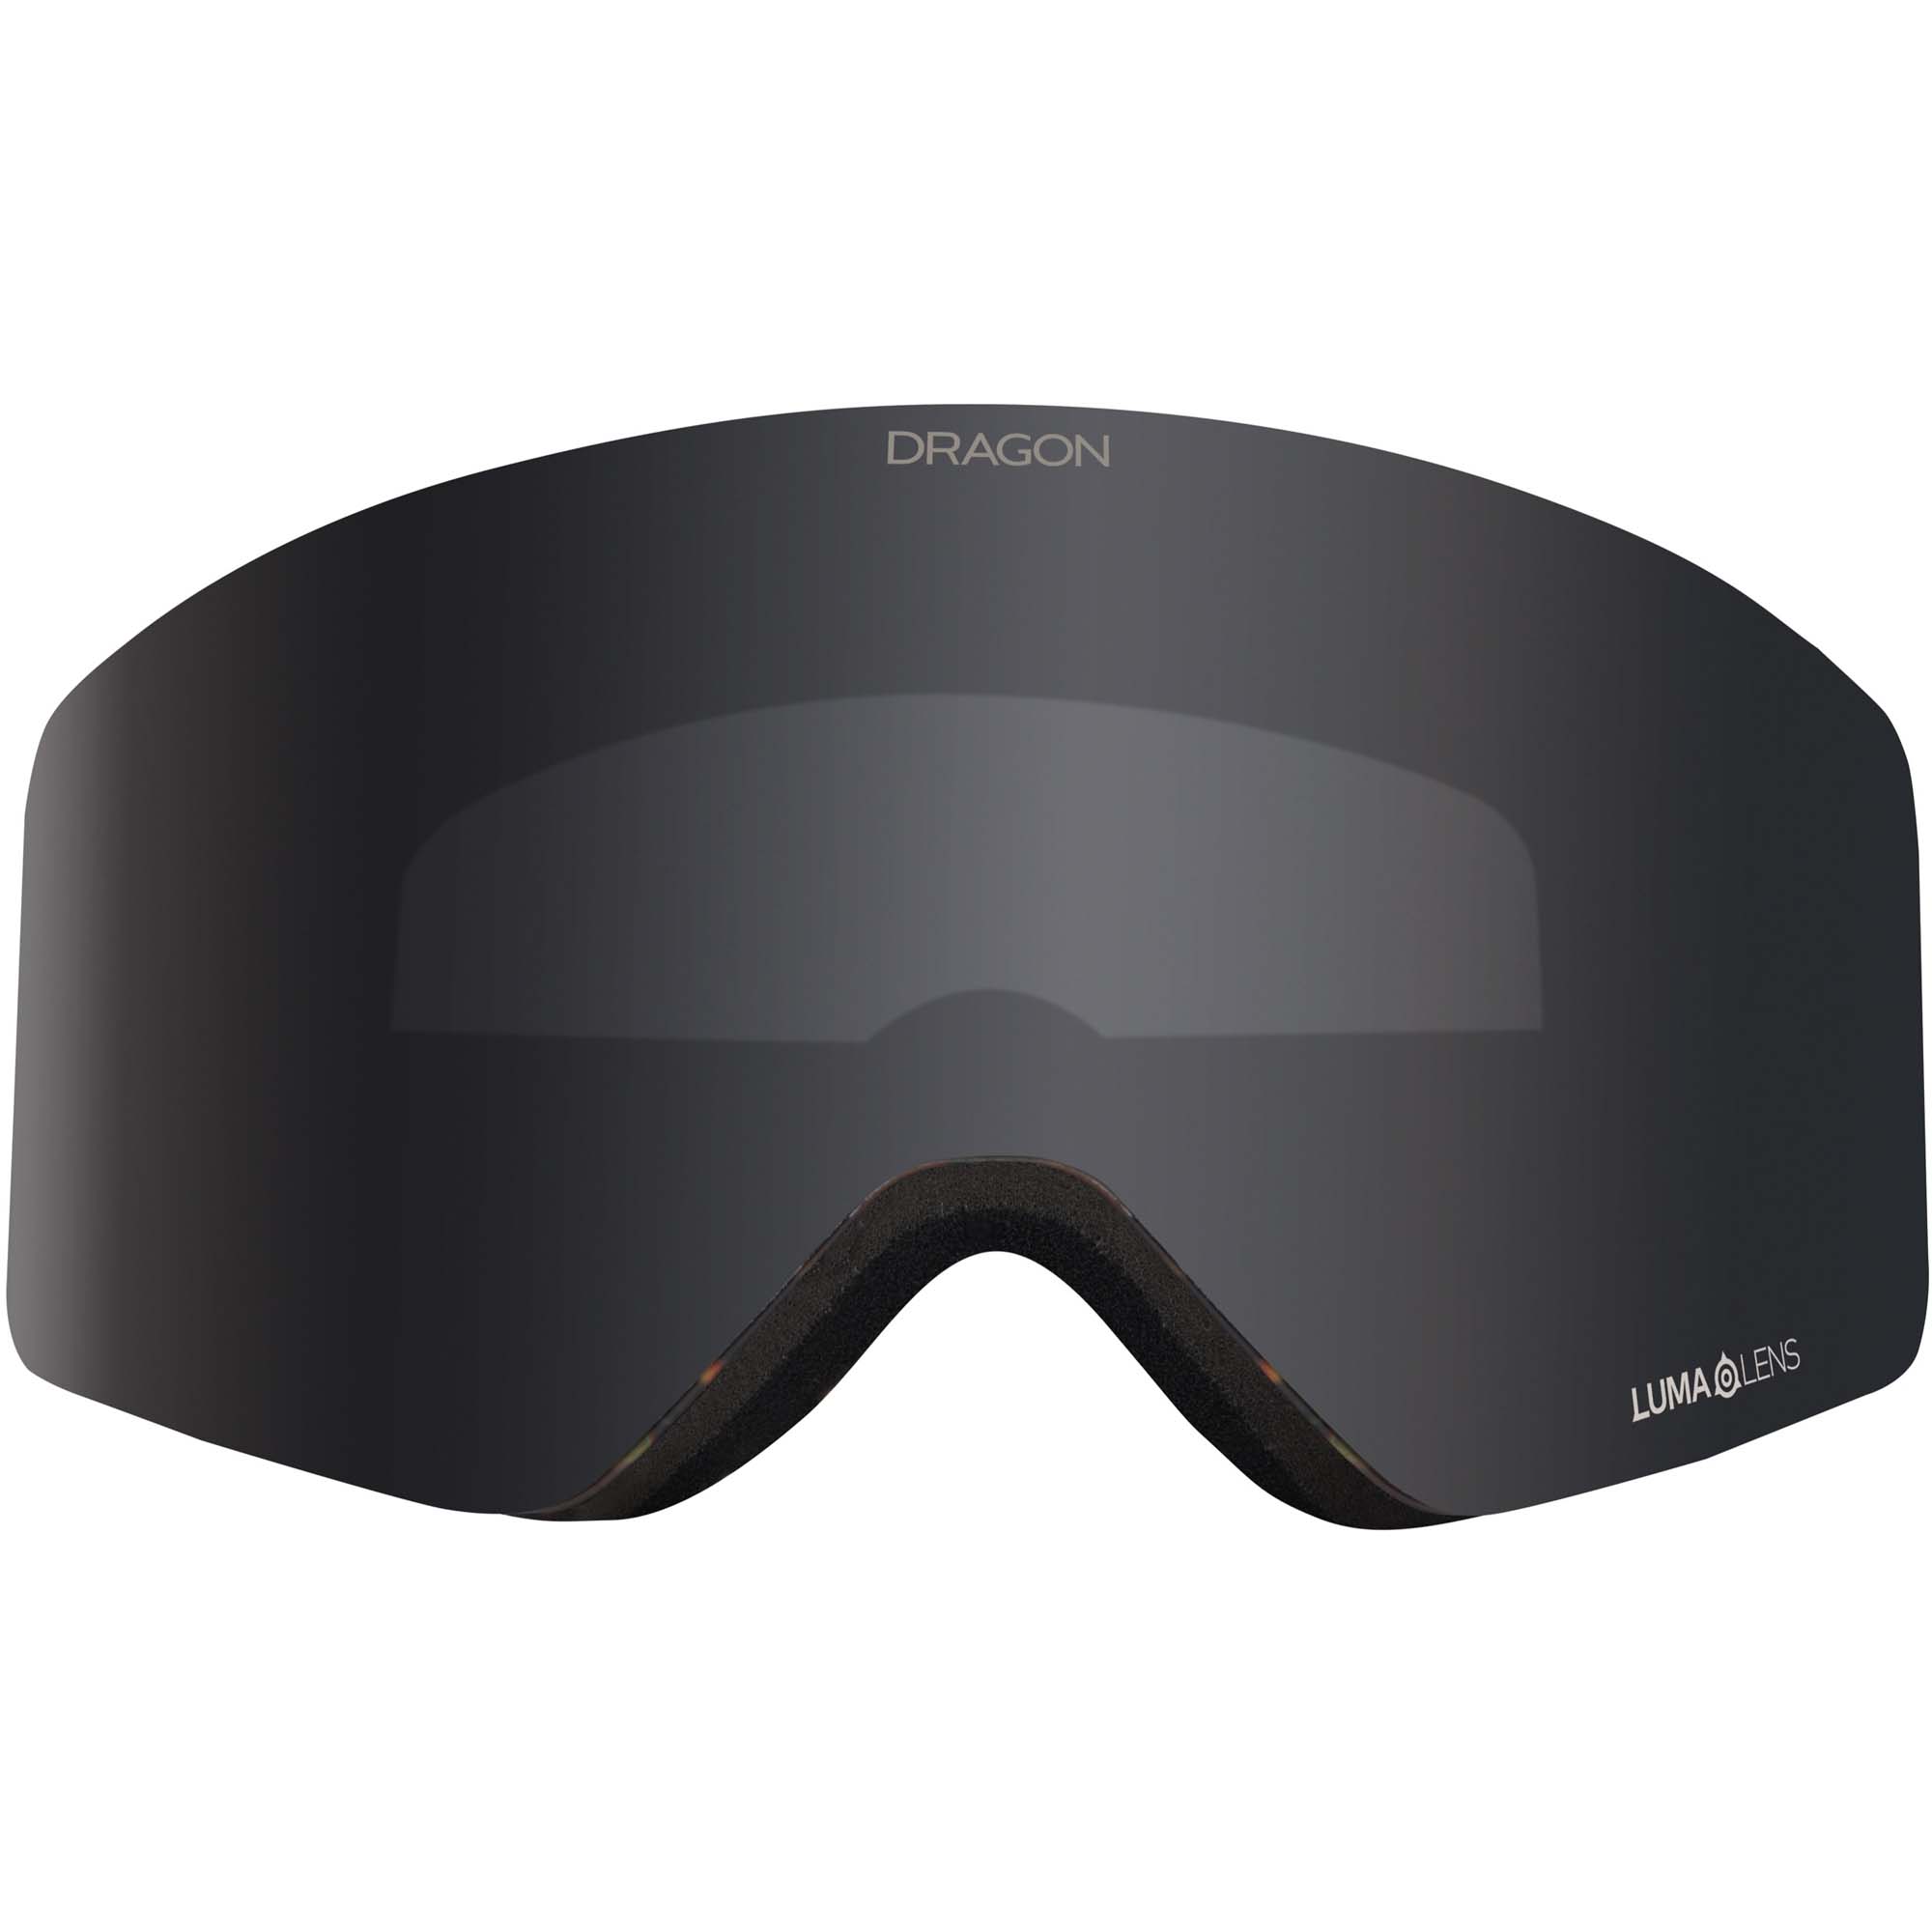 Dragon R1 OTG Ski/Snowboard Goggles